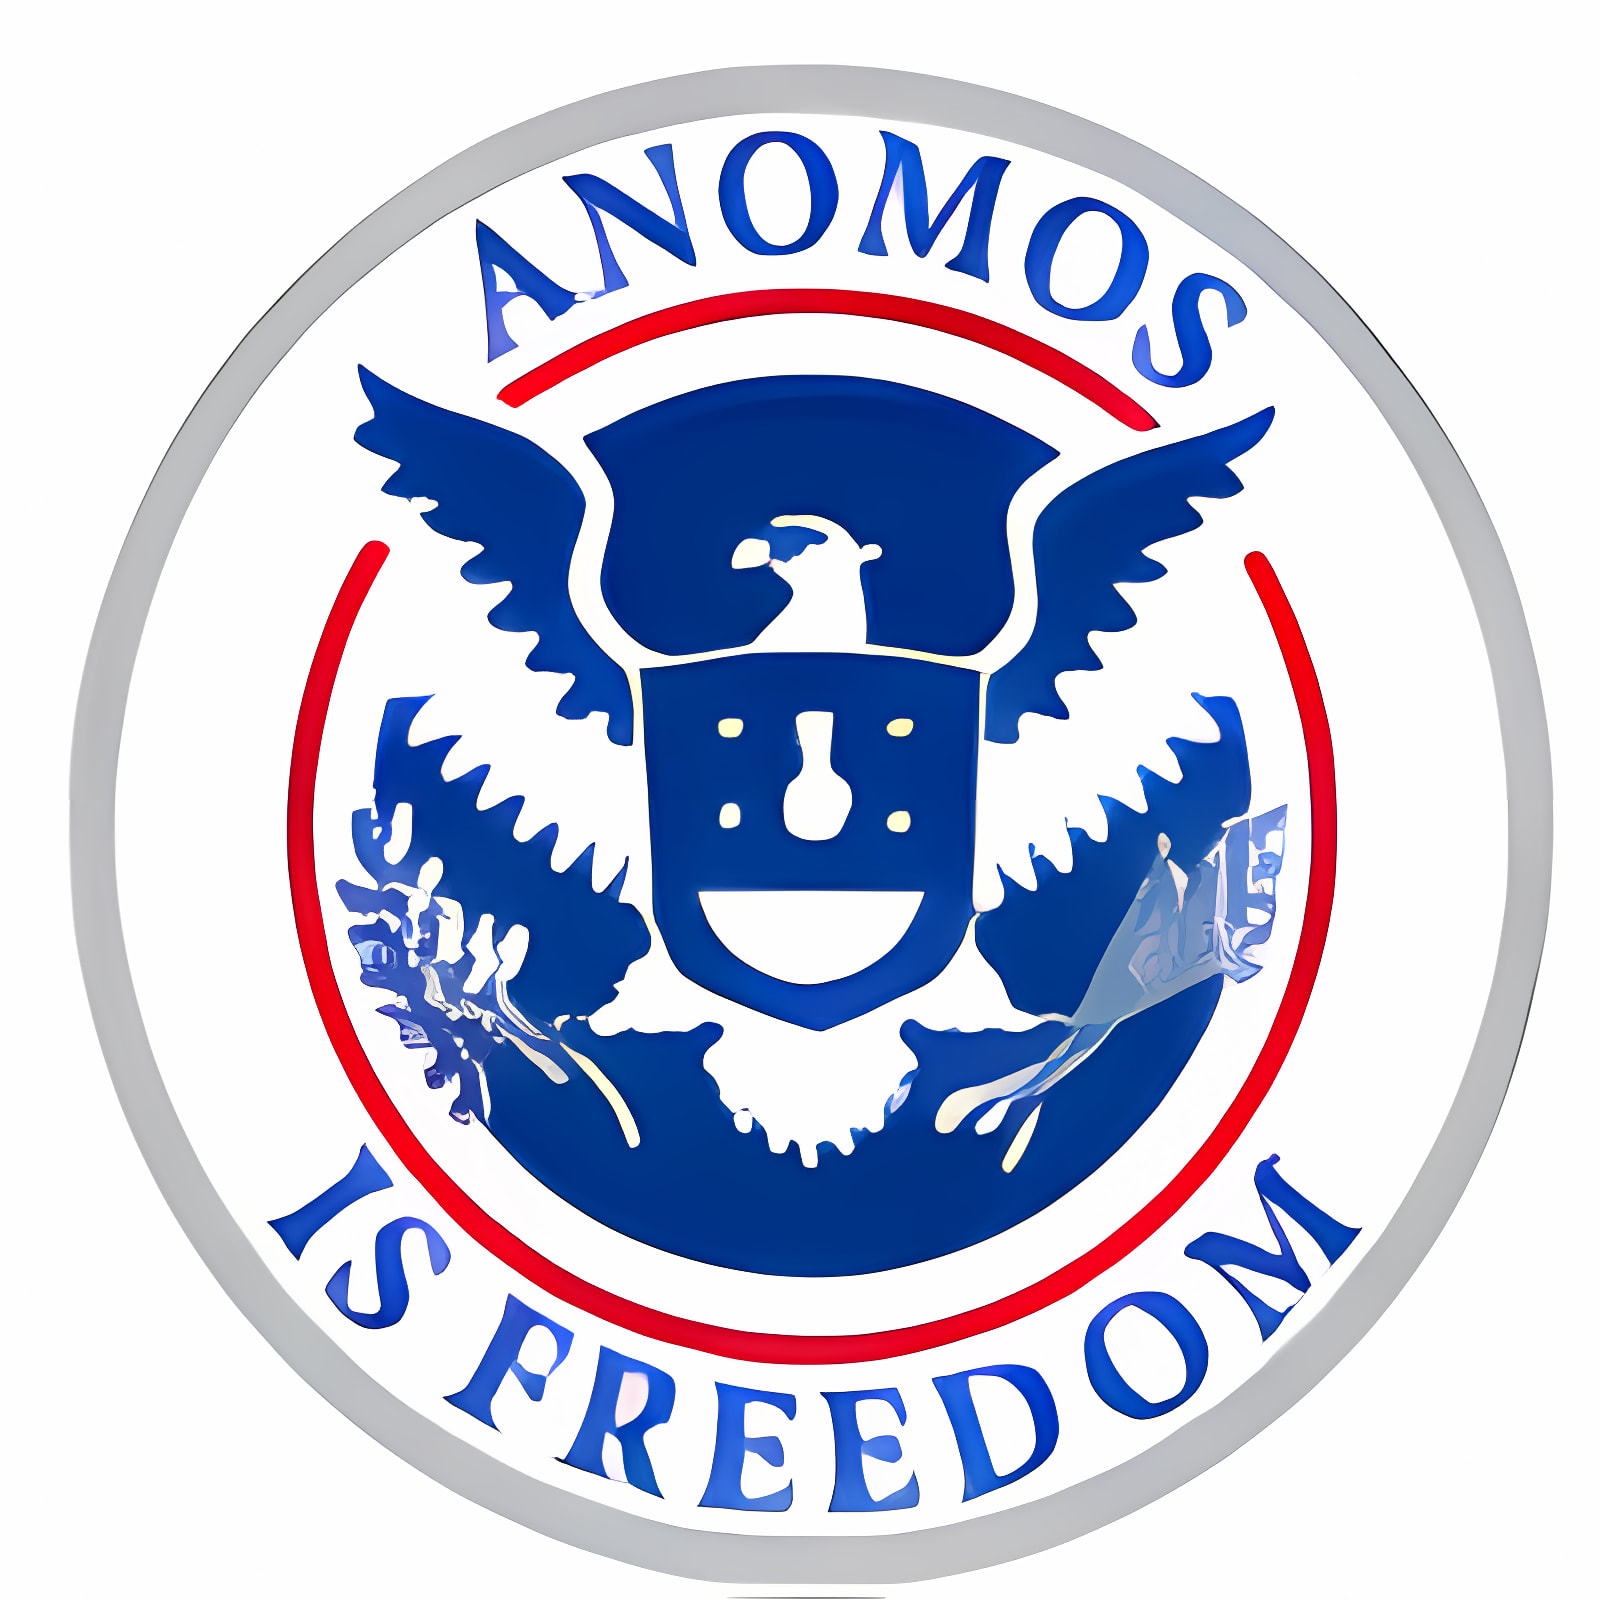 下载 Anomos 安装 最新 App 下载程序